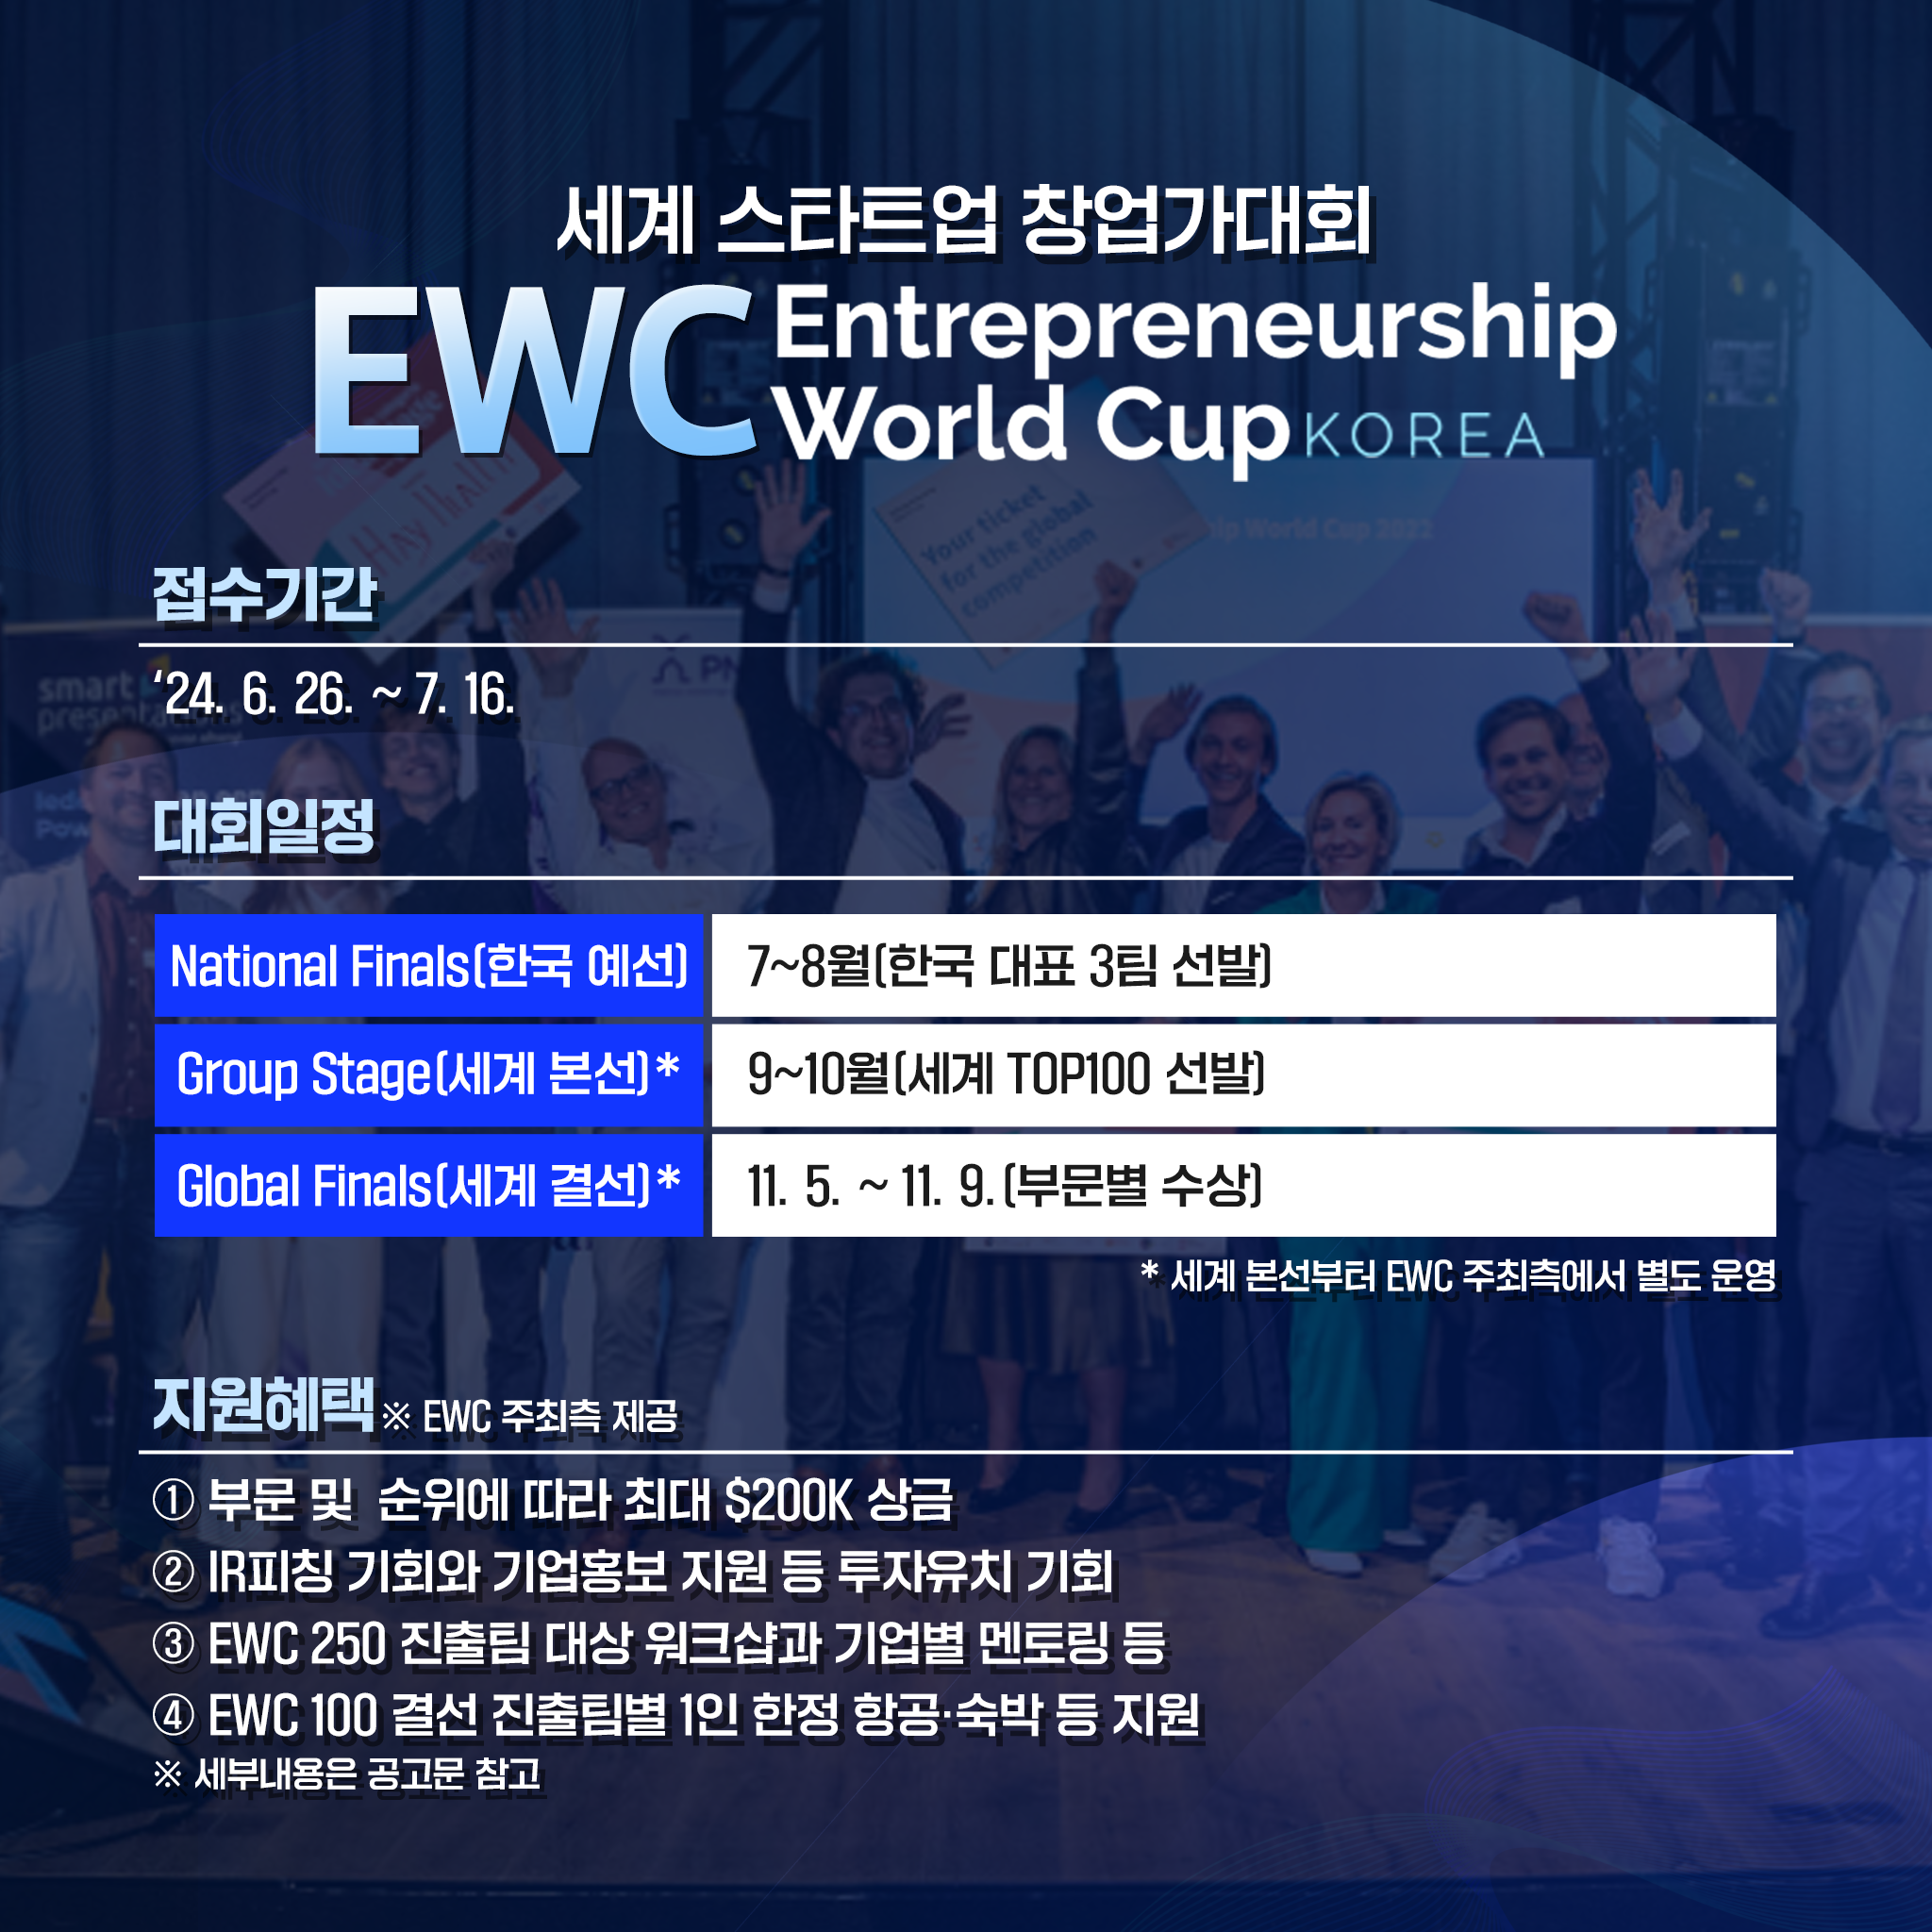 세계 스타트업 창업가대회
EWC Entrepreneurship World Cup KOREA
- 접수기간 : `24.6.26.~7.16.
- 대회일정 : 
National Finals(한국 예선) : 7~8월(한국 대표 3팀 선발)
Group Stage(세계 본선)* : 9~10월(세계 TOP100 선발)
Global Finals(세계 결선)* : 11.5.~11.9.(부문별 수상)
*세계 본선부터 EWC 주최측에서 별도 운영 

지원 혜택
※ EWC 주최측 제공
① 부문 및 순위에 따라 최대 ＄200K 상금
② IR피칭 기회와 기업홍보 지원 등 투자유치 기회
③ EWC 250 진출팀 대상 워크샵과 기업별 멘토링 등
④ EWC 100 결선 진출팀별 1인 한정 항공·숙박 등 지원 
※ 세부 내용은 공고문 참고 